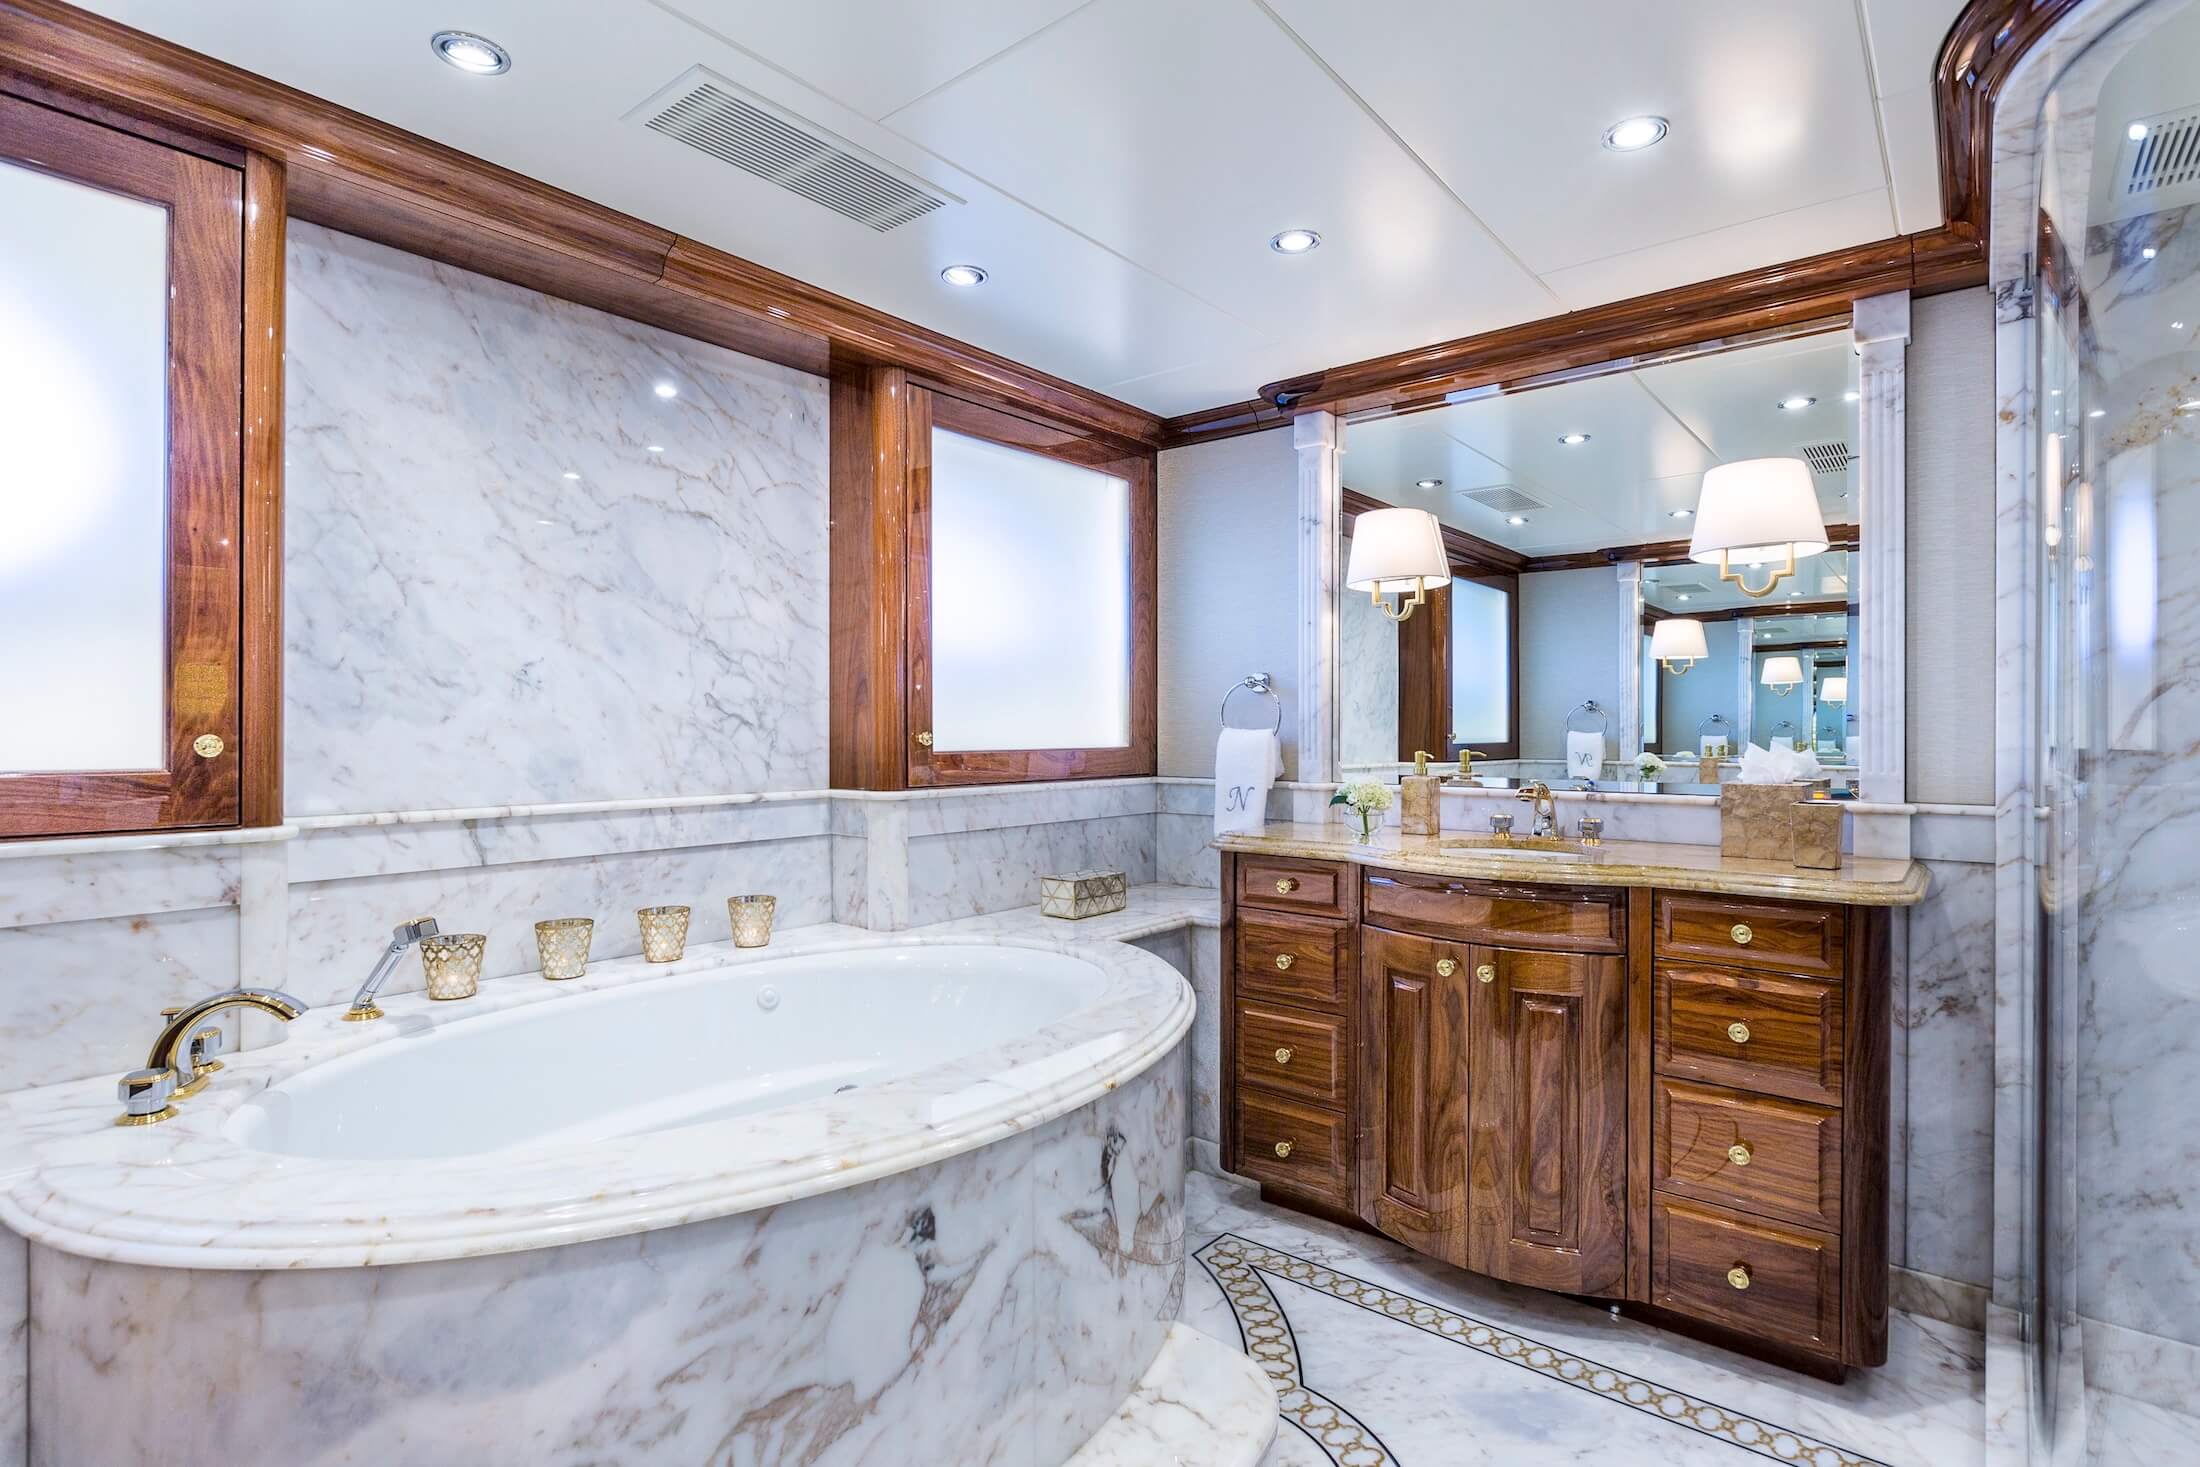 D'Natalin Luxury Yacht bathroom with tub